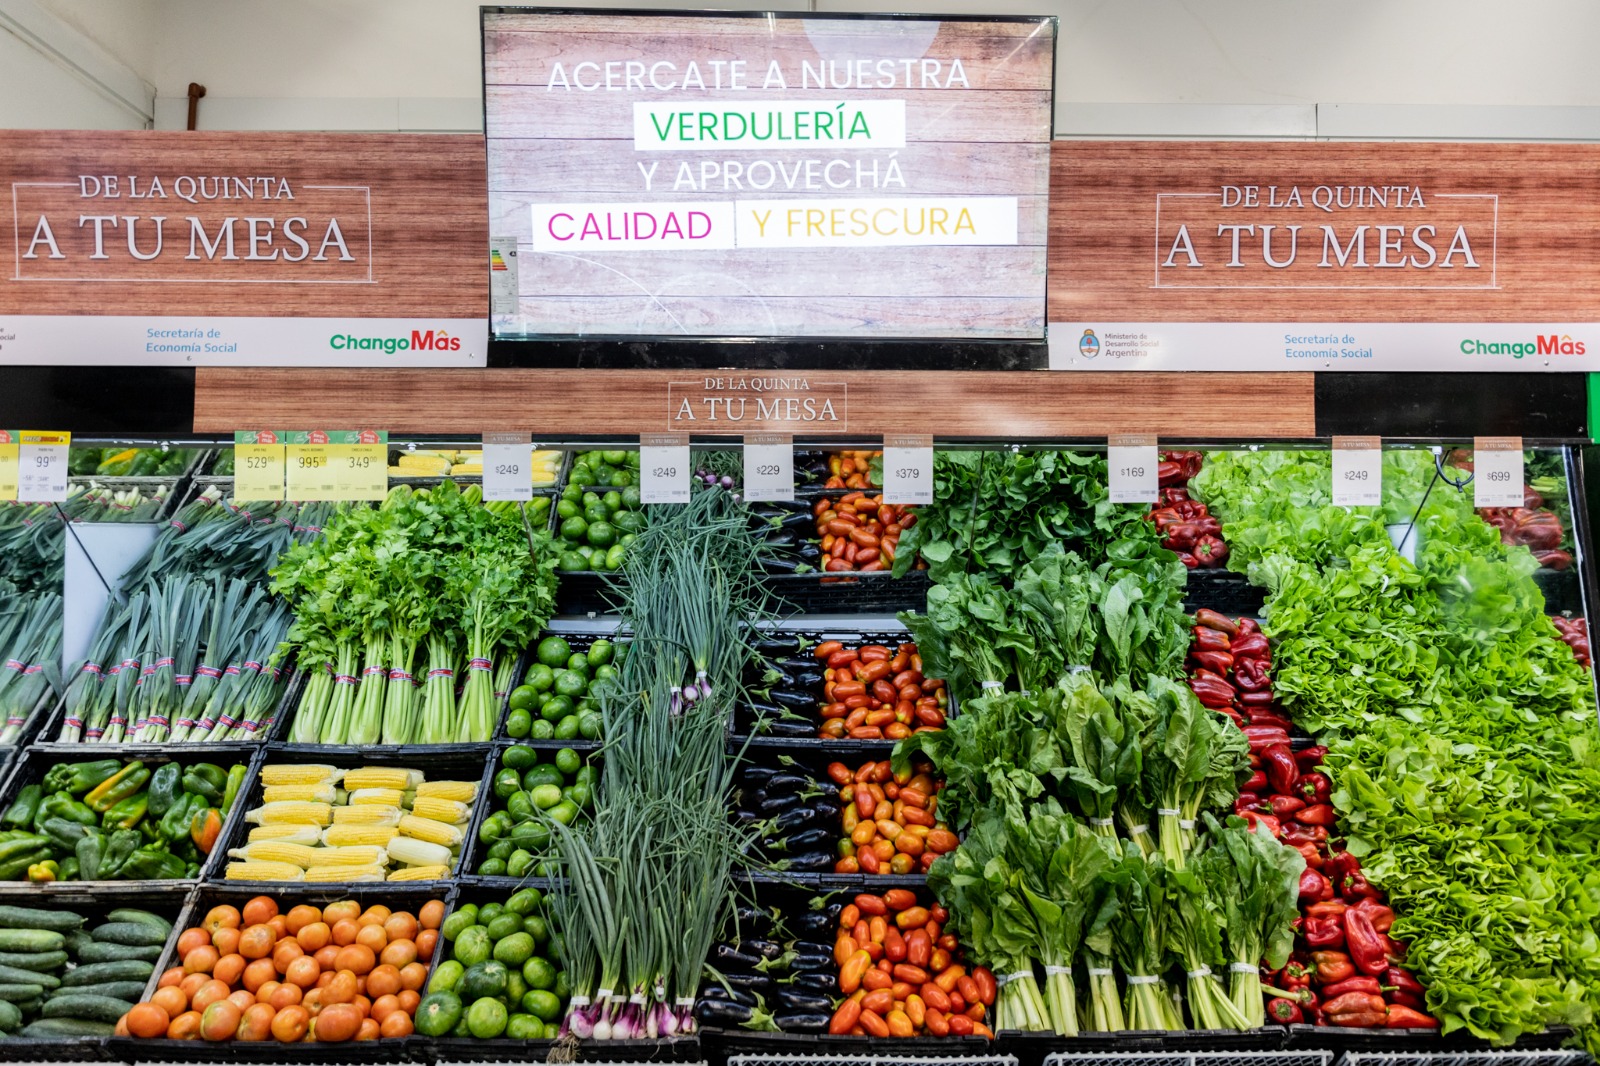 Sección de frutas y verduras que el supermercado ofrece a través del programa “De la Quinta a tu Mesa".